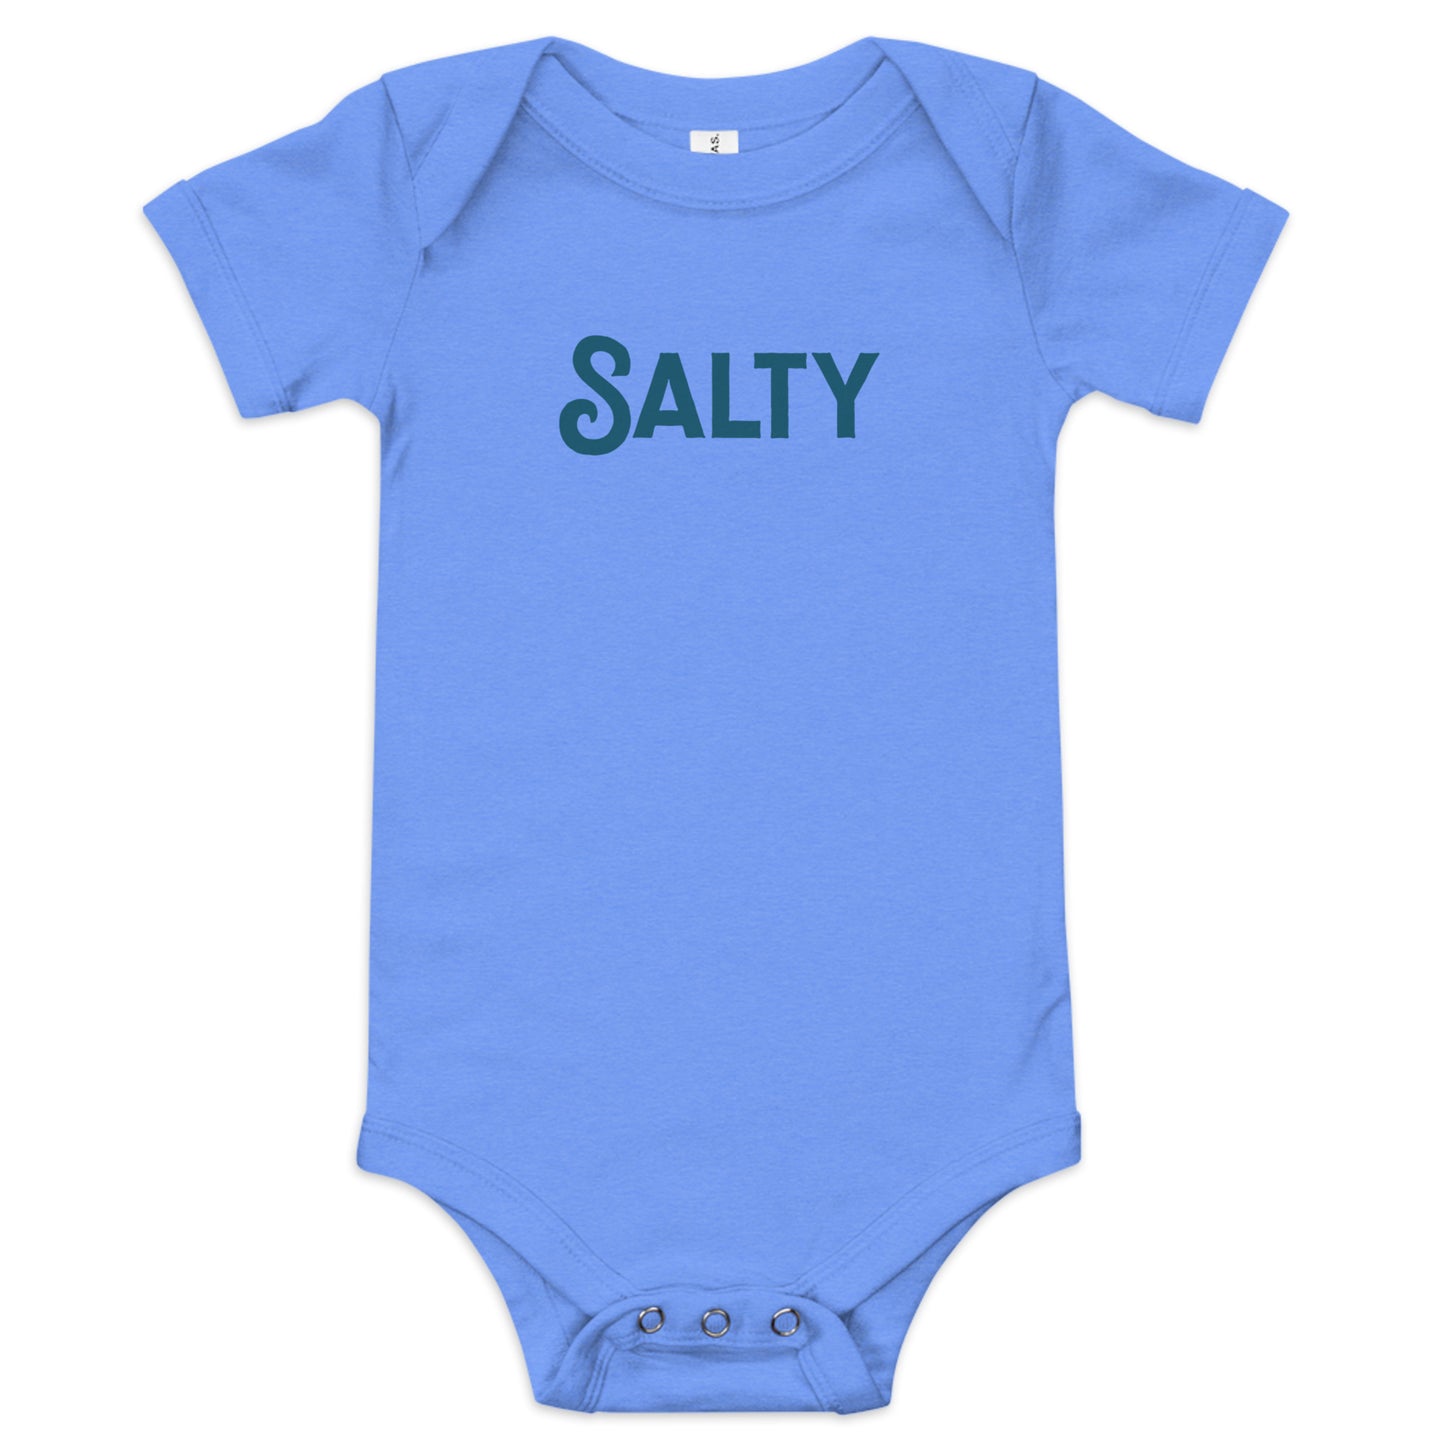 Salty - Baby Bodysuit